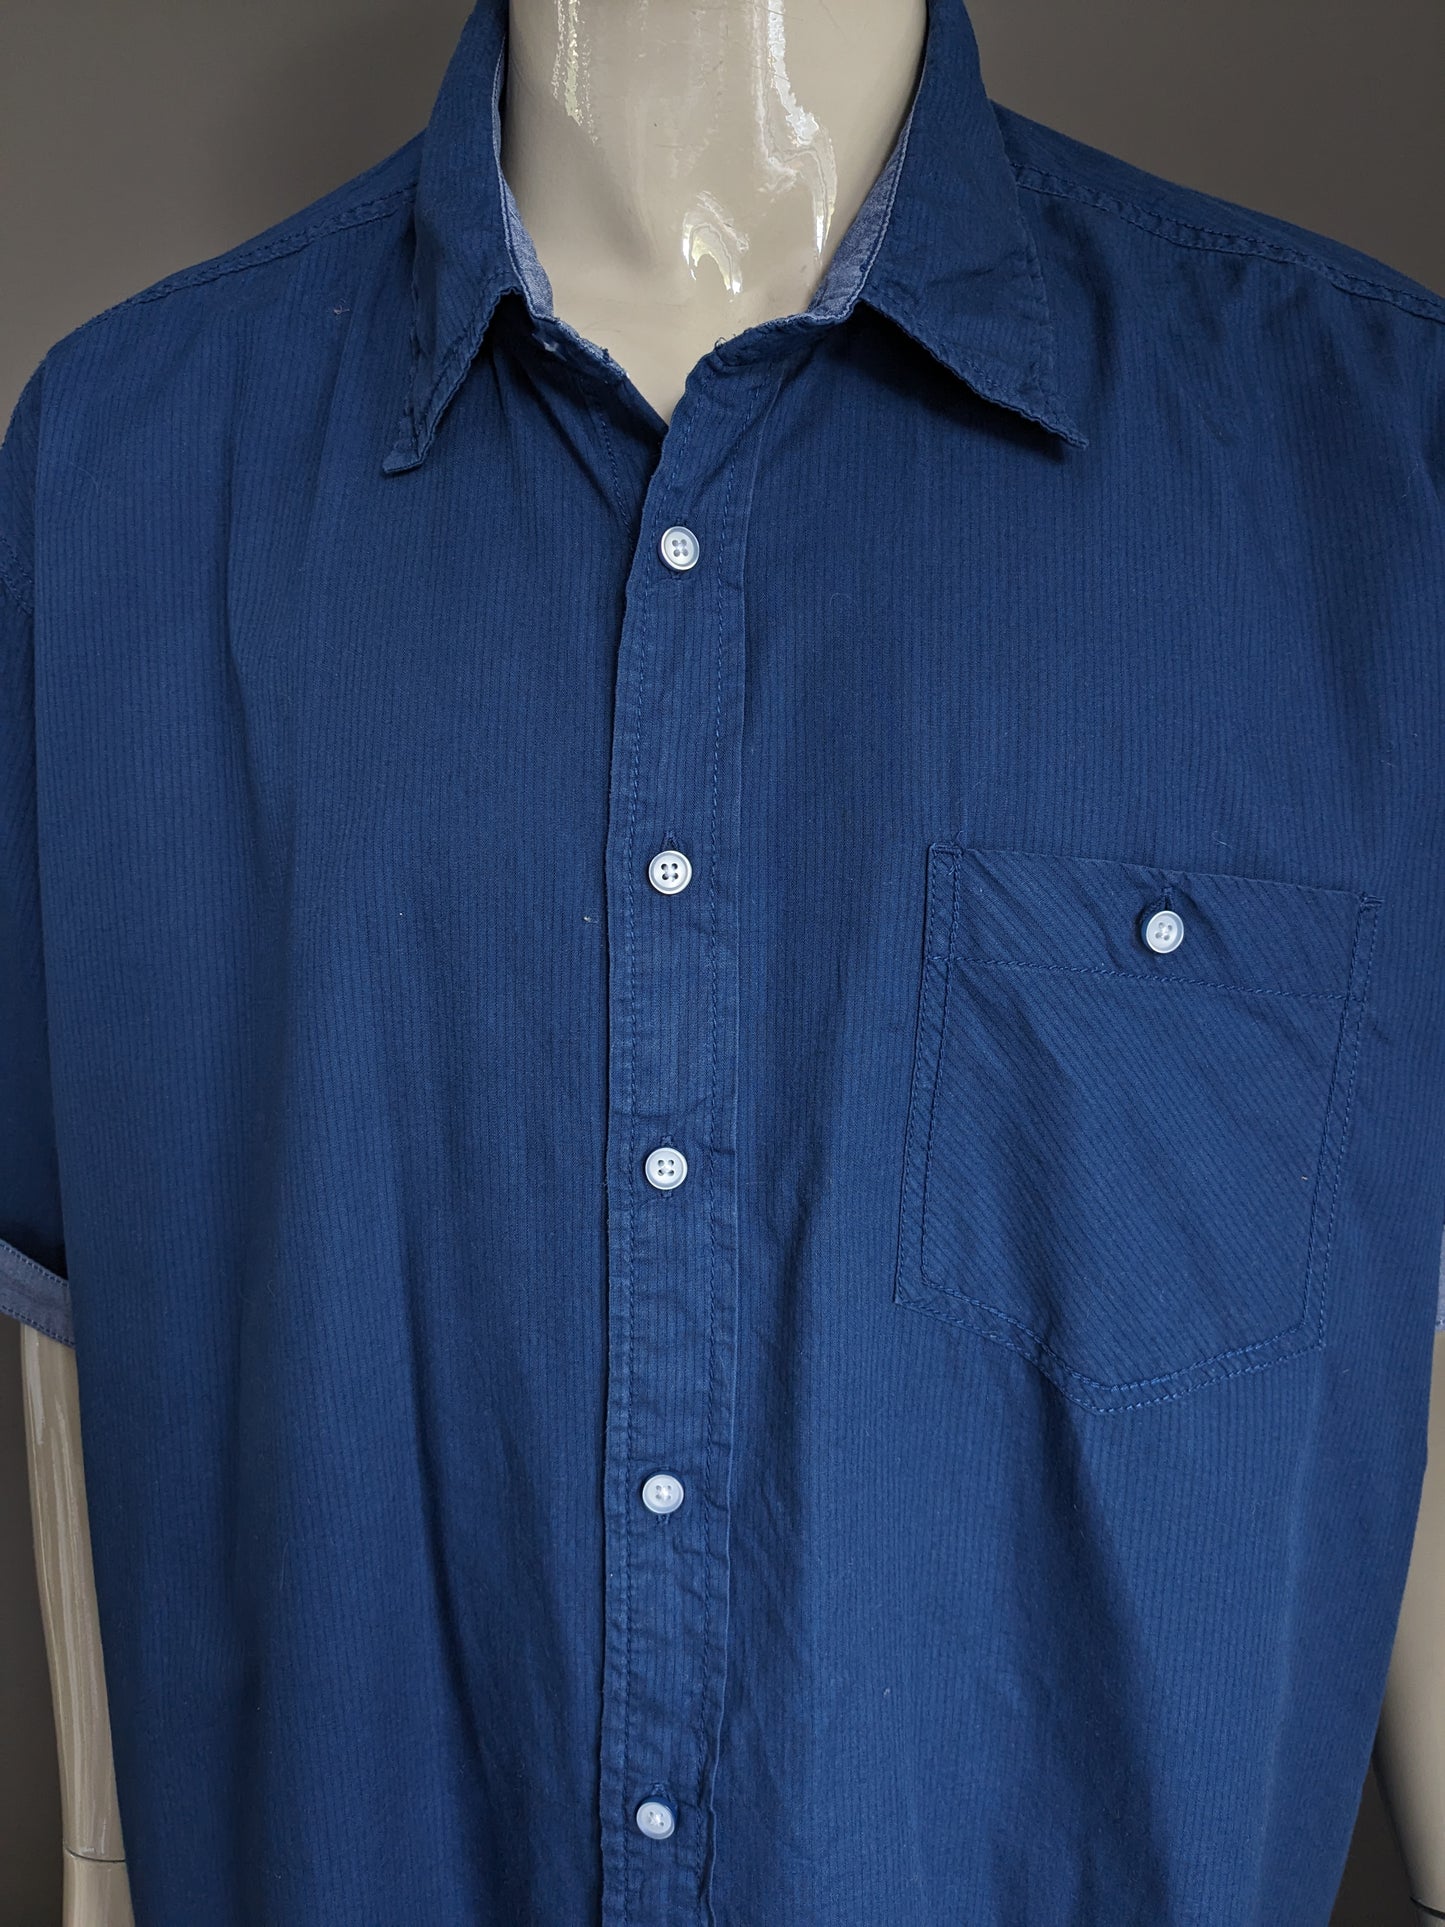 Canda Shirt Short Maniche. Strisce blu scuro. Dimensione 4xl / xxxxl.